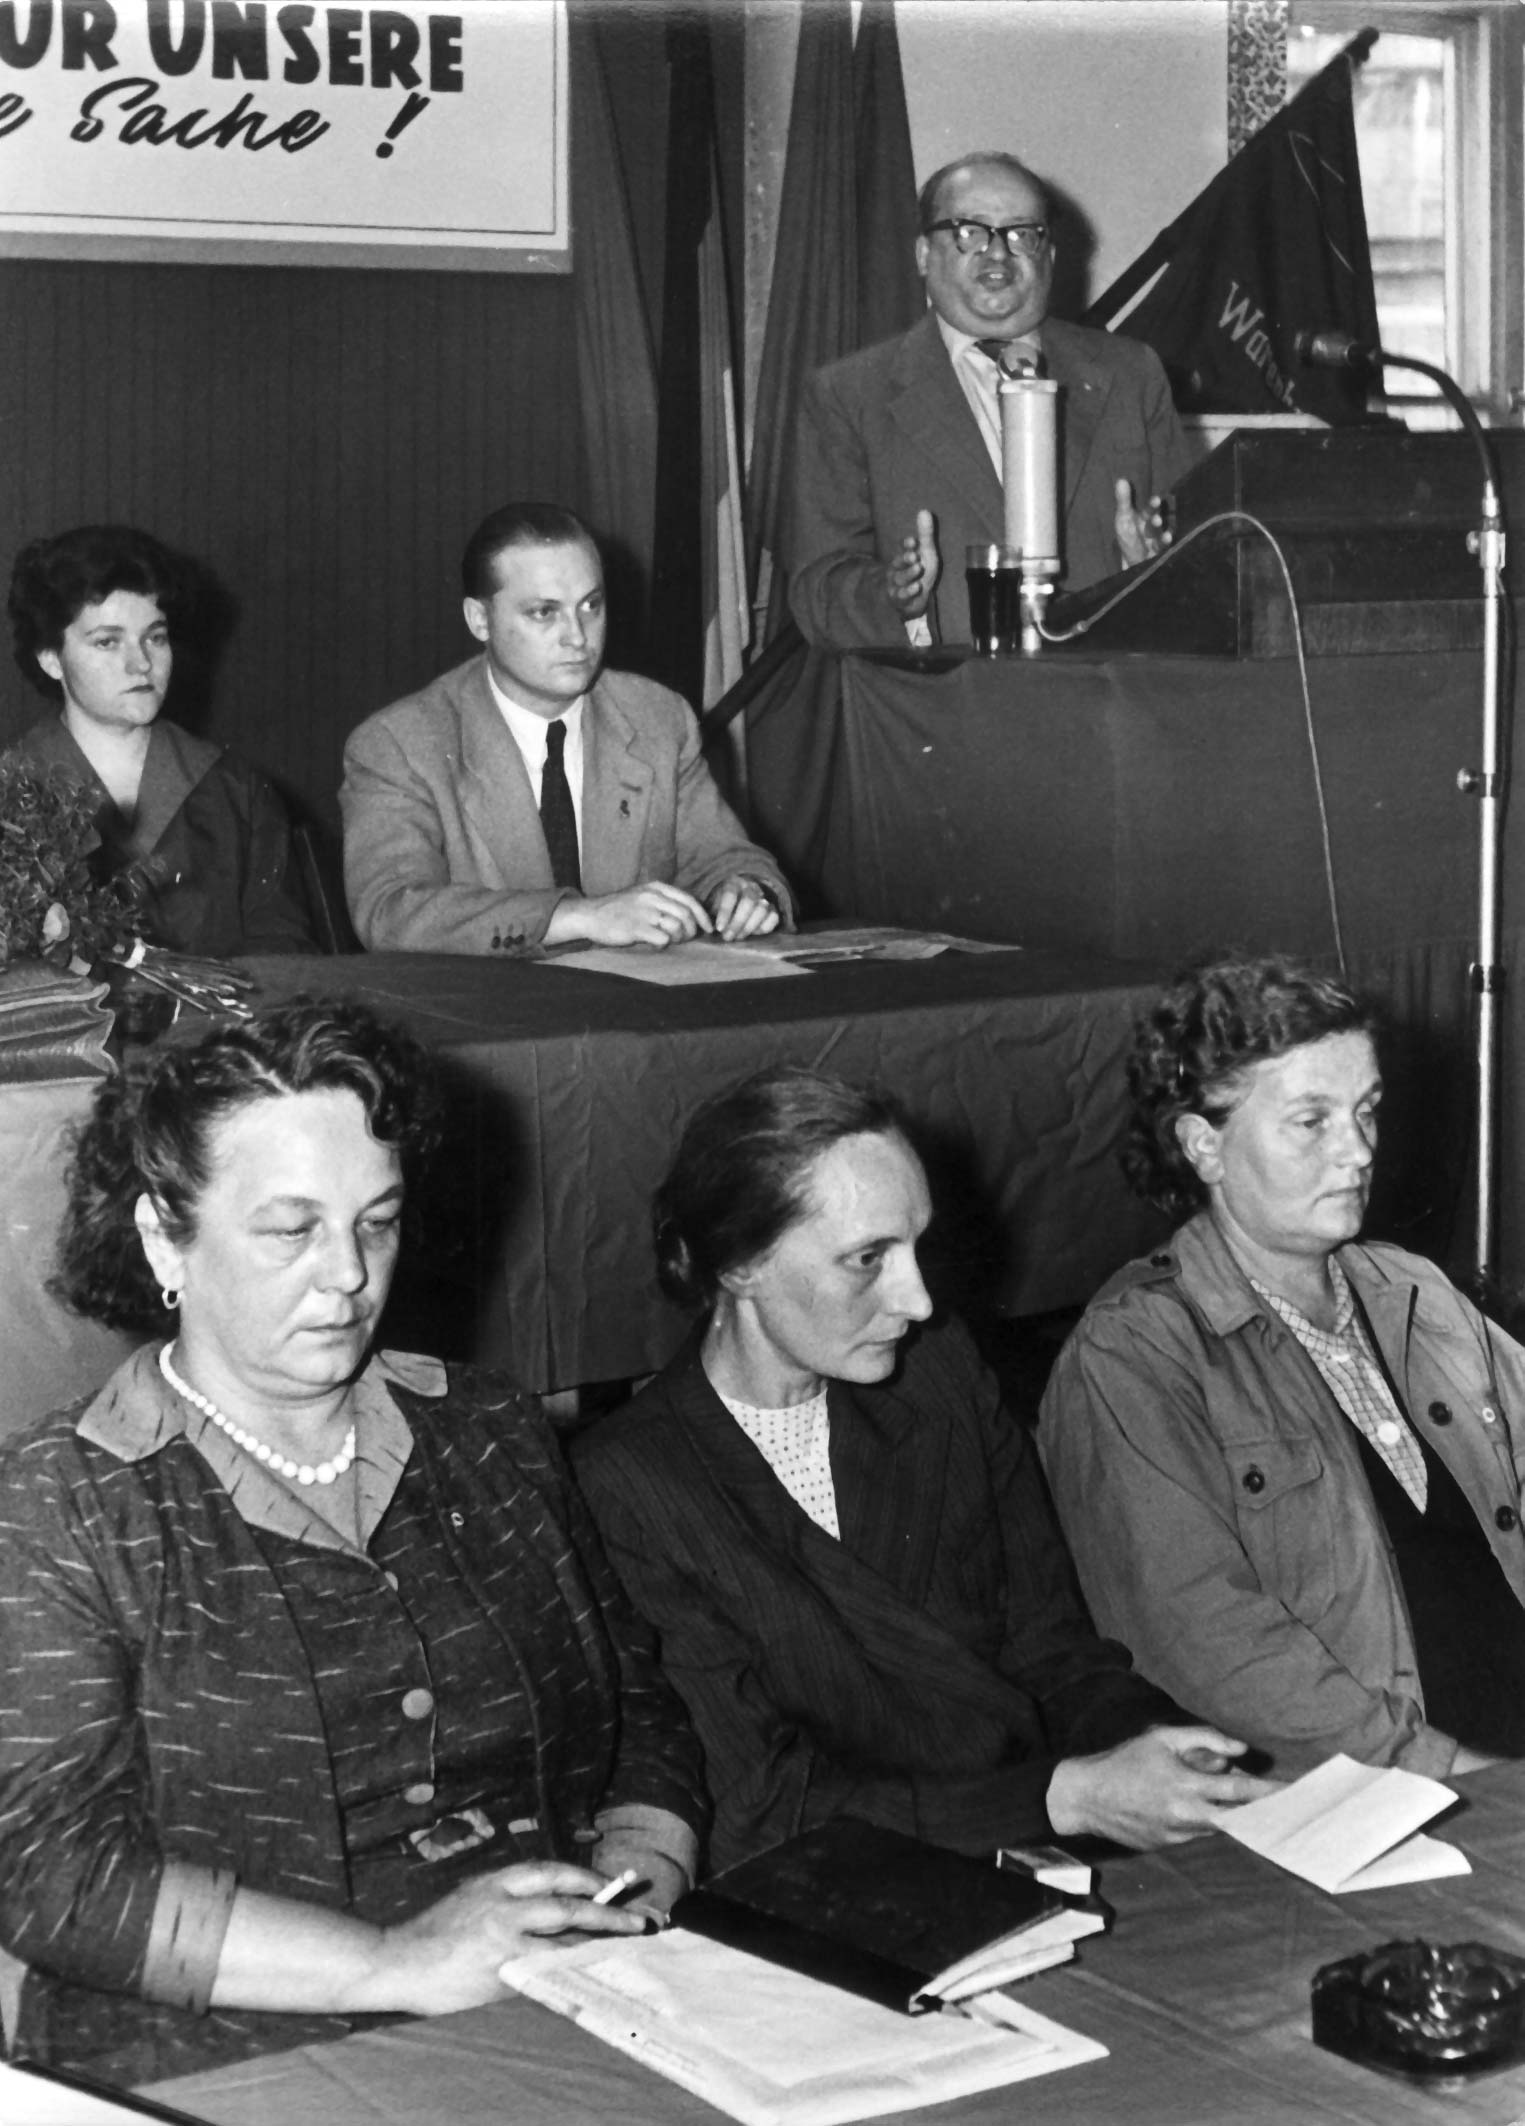 Friedrich Ebert im Hintergrund an einem Rednerpult, im Vordergrund in zwei Reihen Zuhörer:innen vermutlich auf einem Podium